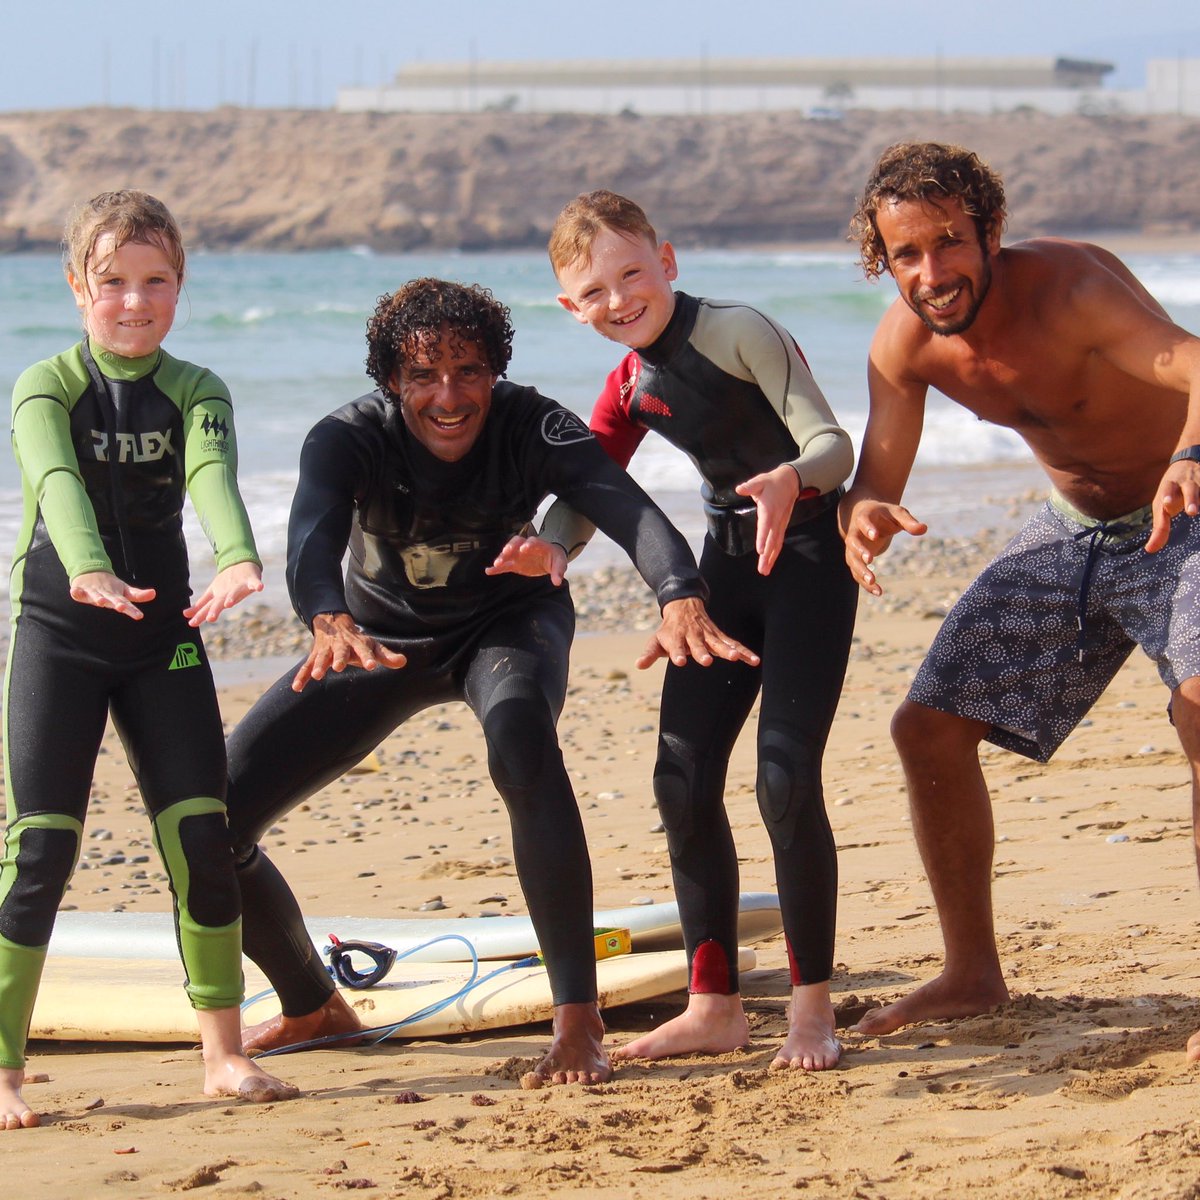 The sweetest surf sessions 🤙
〰
#gromsquad #surfsessions #kidswhosurf #familysurfholiday #familysurf #surferkids #surfgroms  #morocco
〰
shakasurfmorocco.com